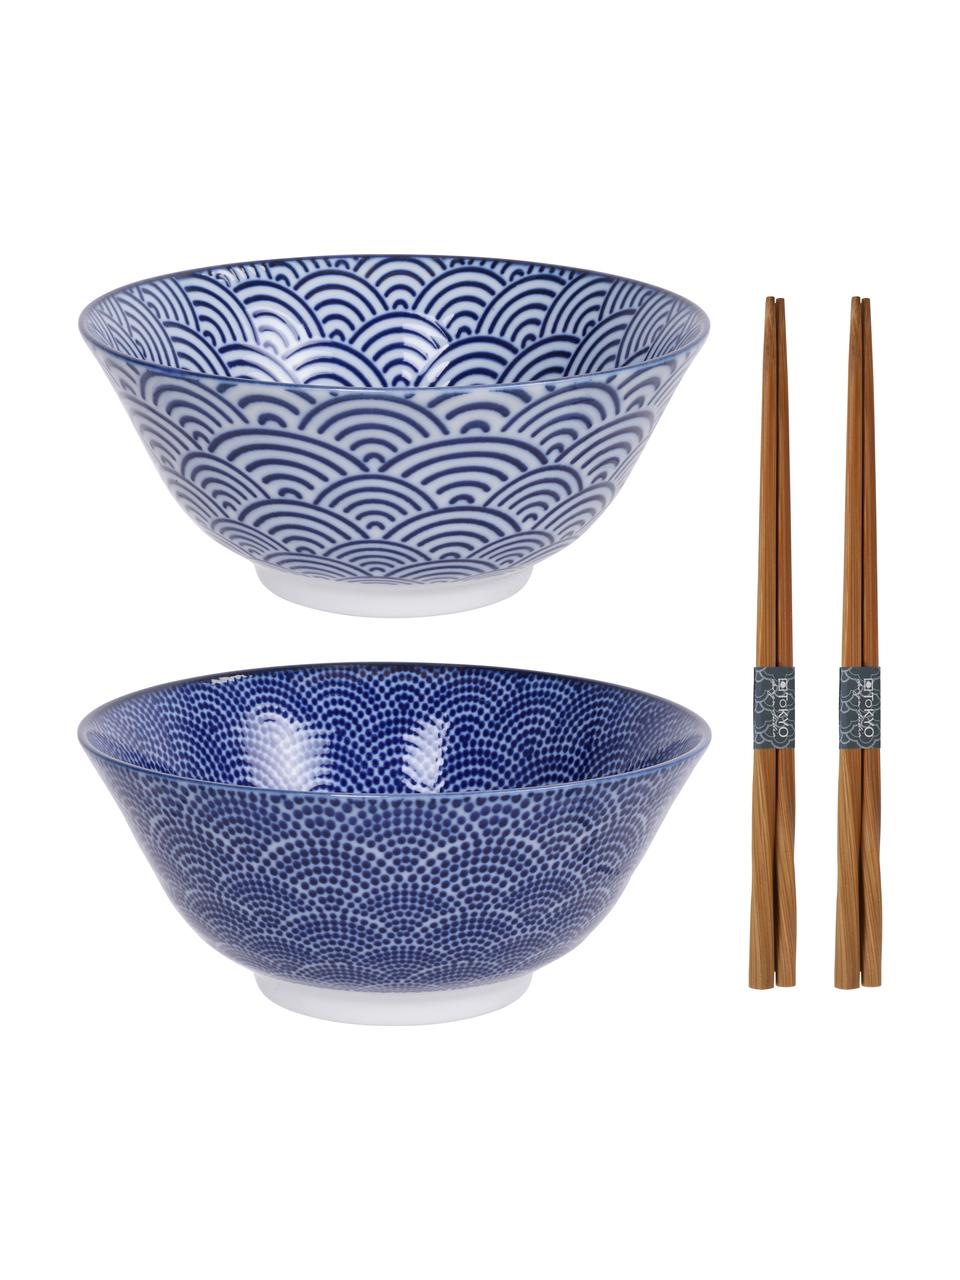 Handgemachte Porzellan-Schälchen Nippon in Blau/Weiss mit Essstäbchen, 4-er Set, Schälchen: Porzellan, Blau, Dunkles Holz, Set mit verschiedenen Grössen